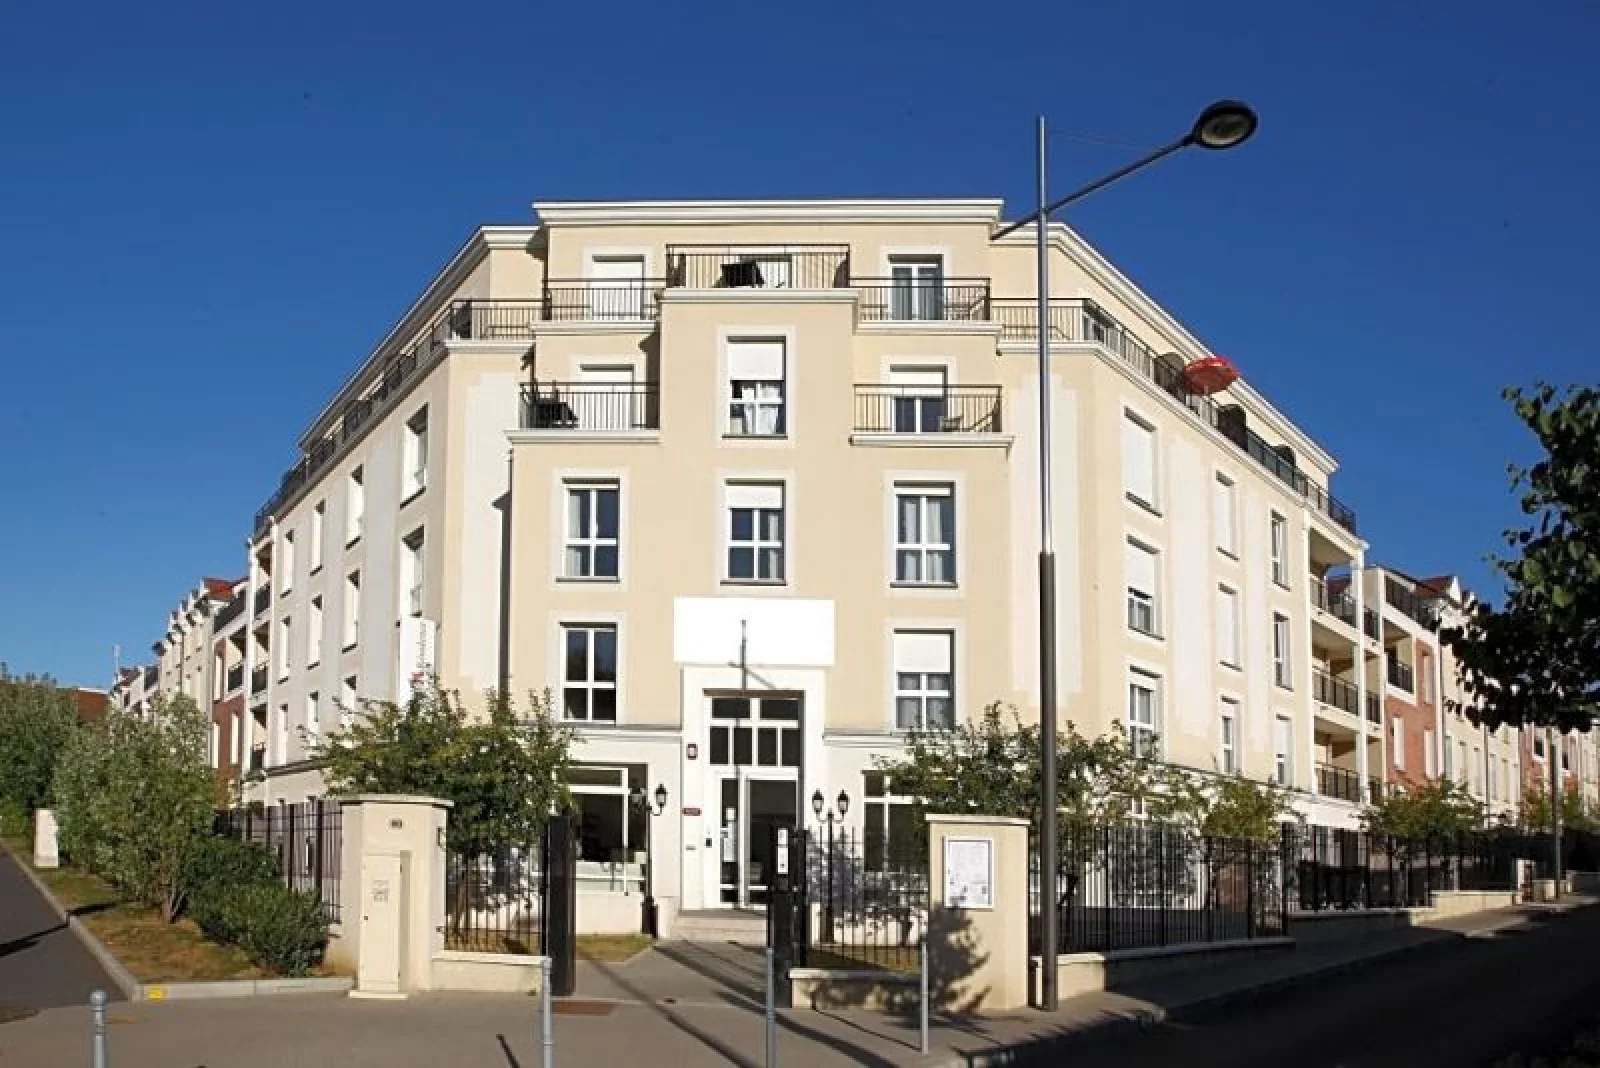 Location appartement meublé duplex 4 pièces 92m² (Paris est 94 - Bry sur Marne)